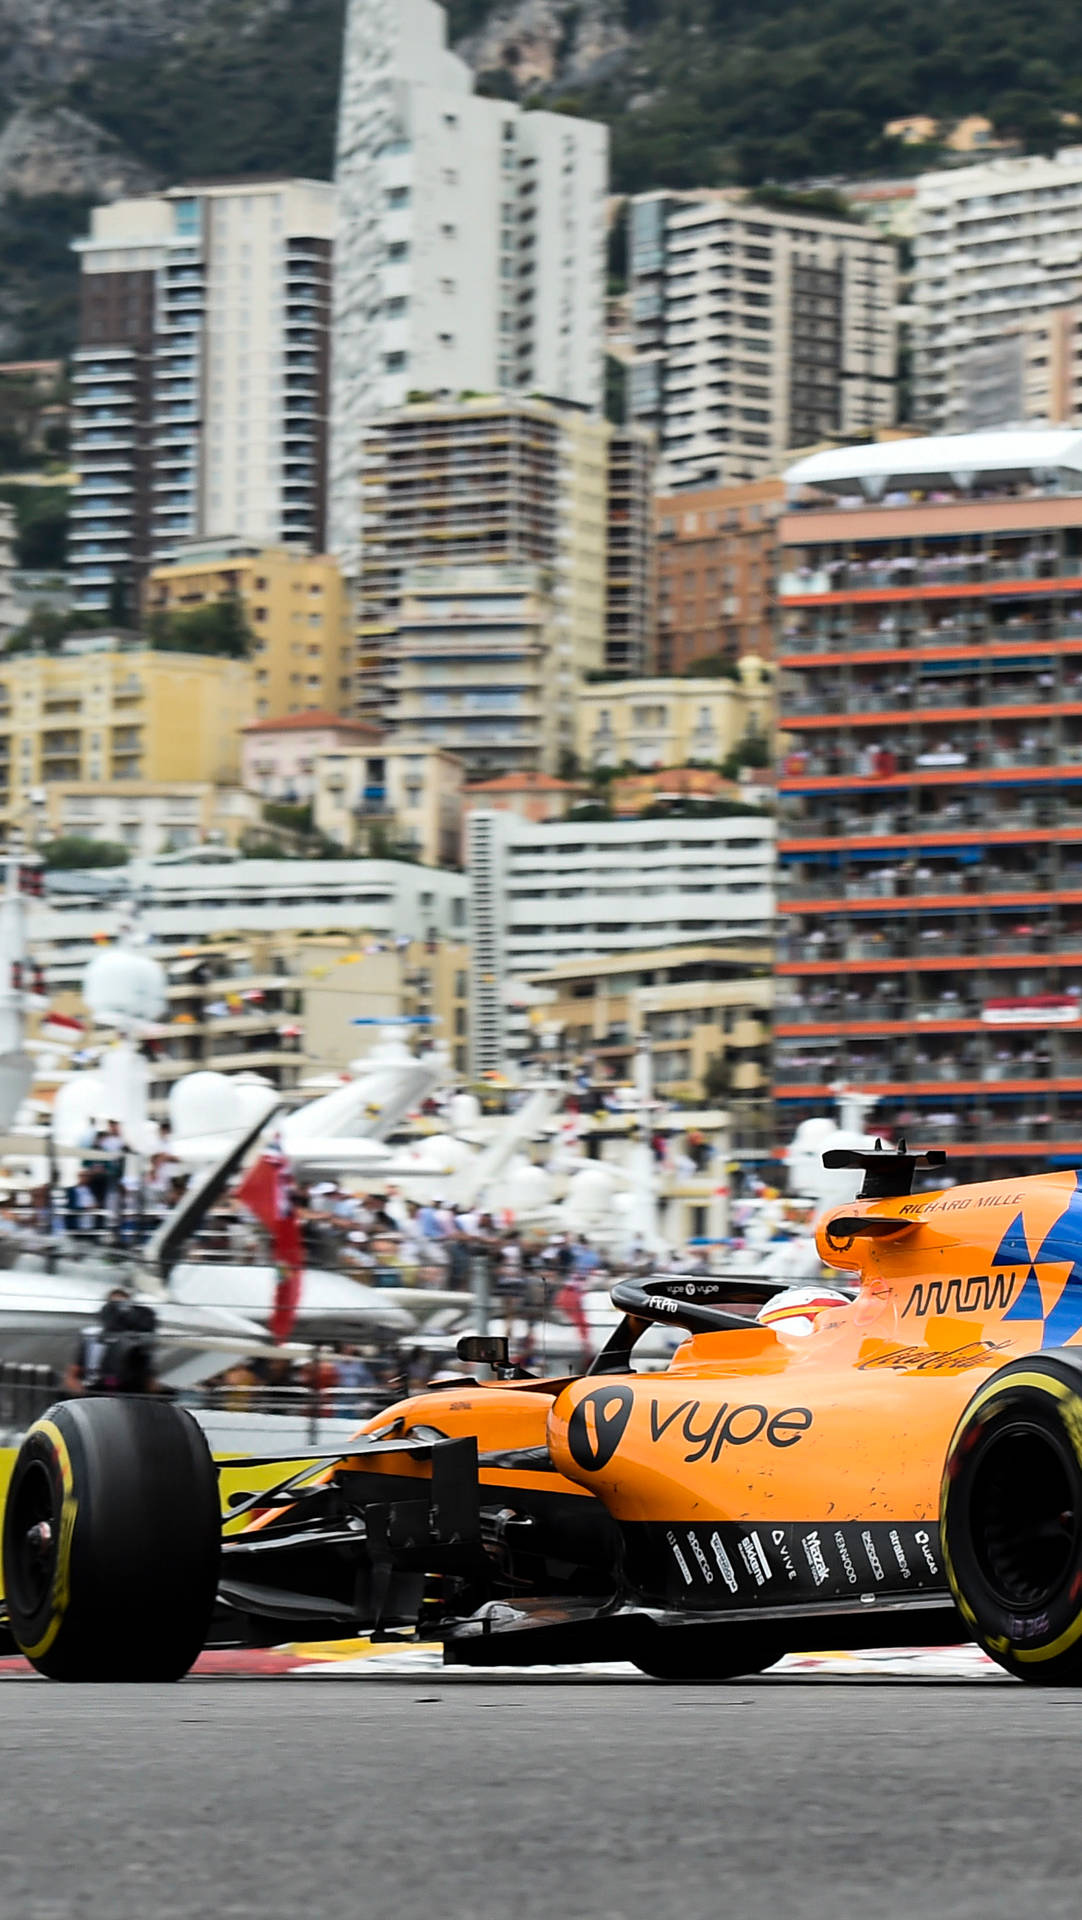 F1 Mclaren On Monaco Circuit Iphone